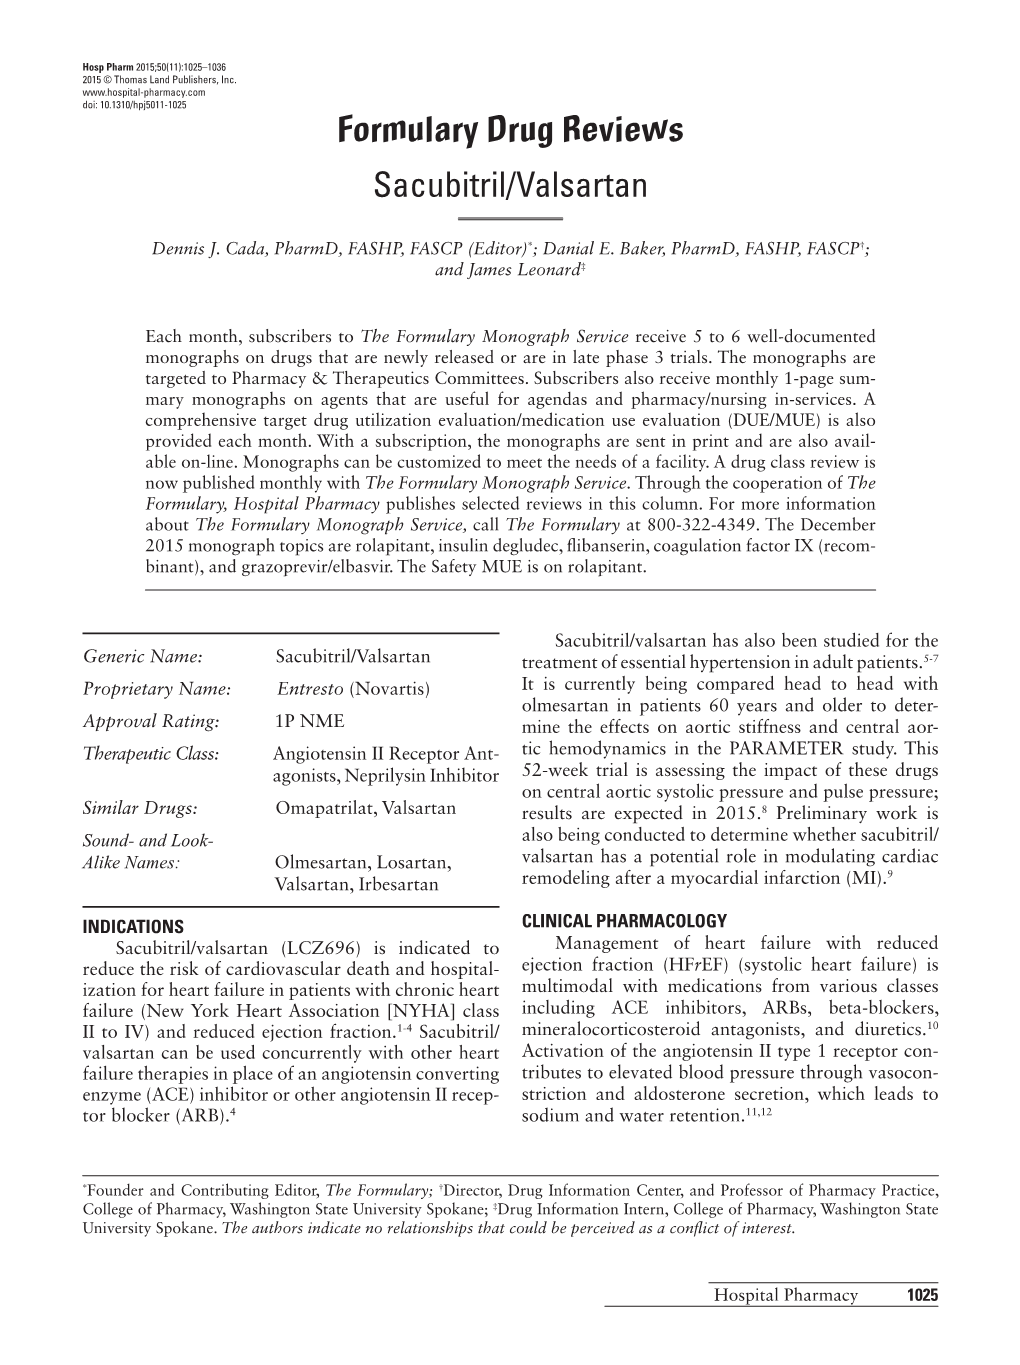 Formulary Drug Reviews Sacubitril/Valsartan